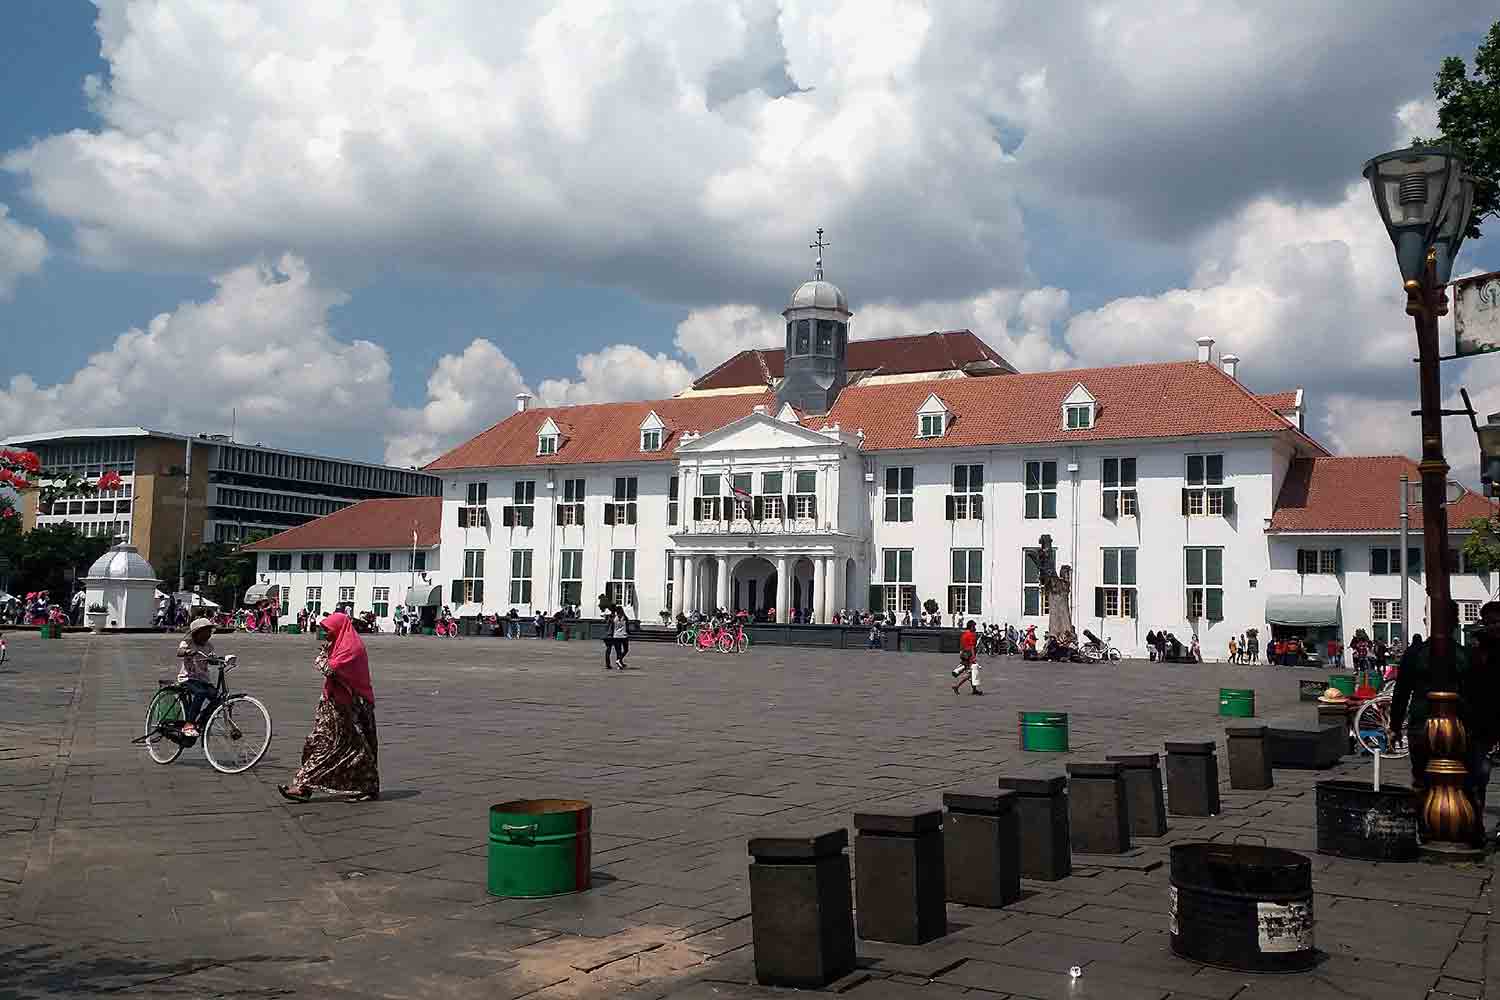 Jakarta Old Town